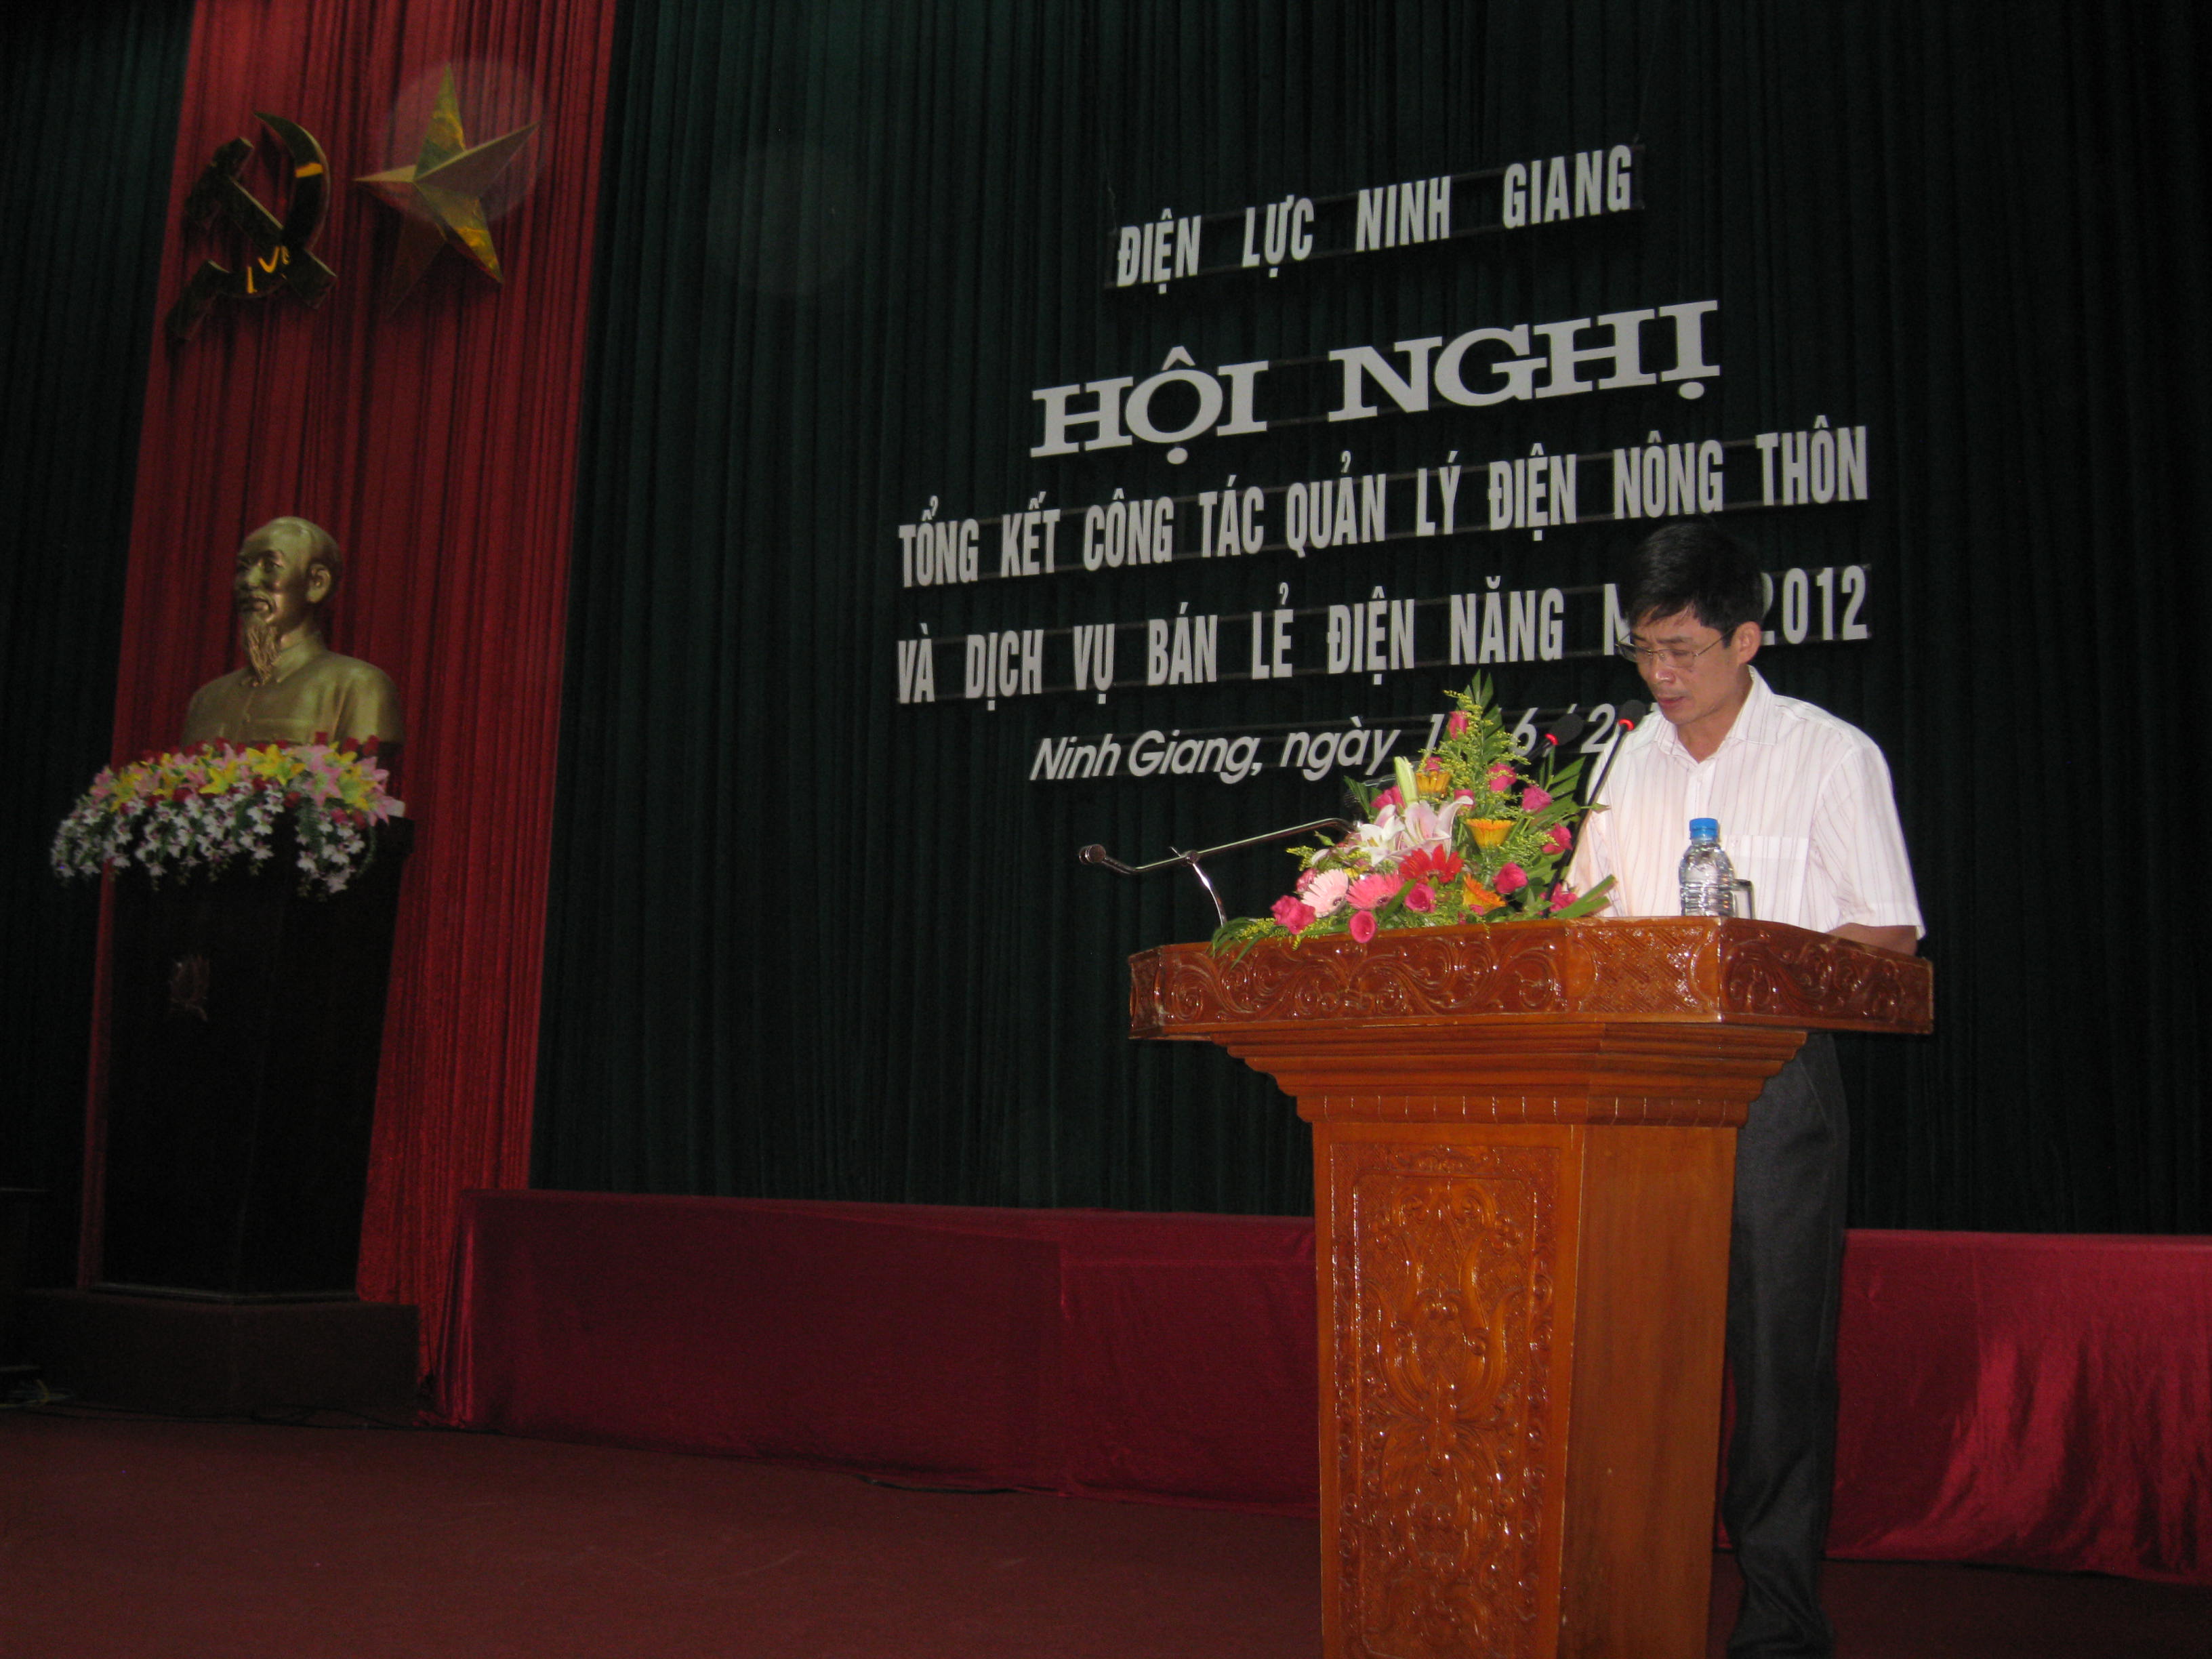 Điện Lực Ninh Giang:Tổ chức Hội nghị tổng kết công tác quản lý điện nông thôn và dịch vụ bán lẻ điện năng năm 2012.